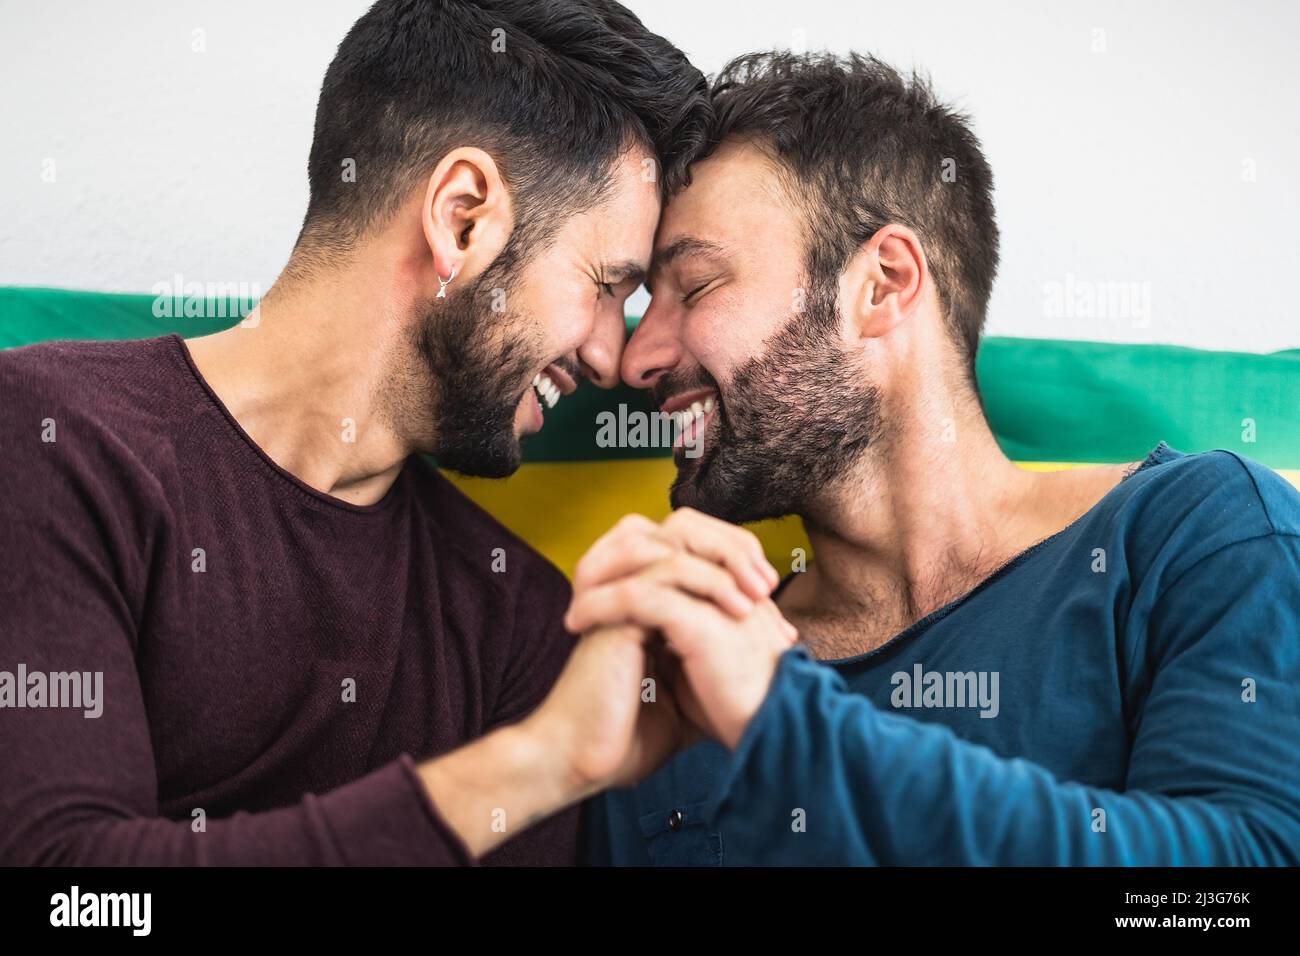 Glücklich schwulen Paar mit romantischen Momenten im Bett - homosexuelle Liebesbeziehung und Geschlechtergleichstellung Konzept Stockfoto